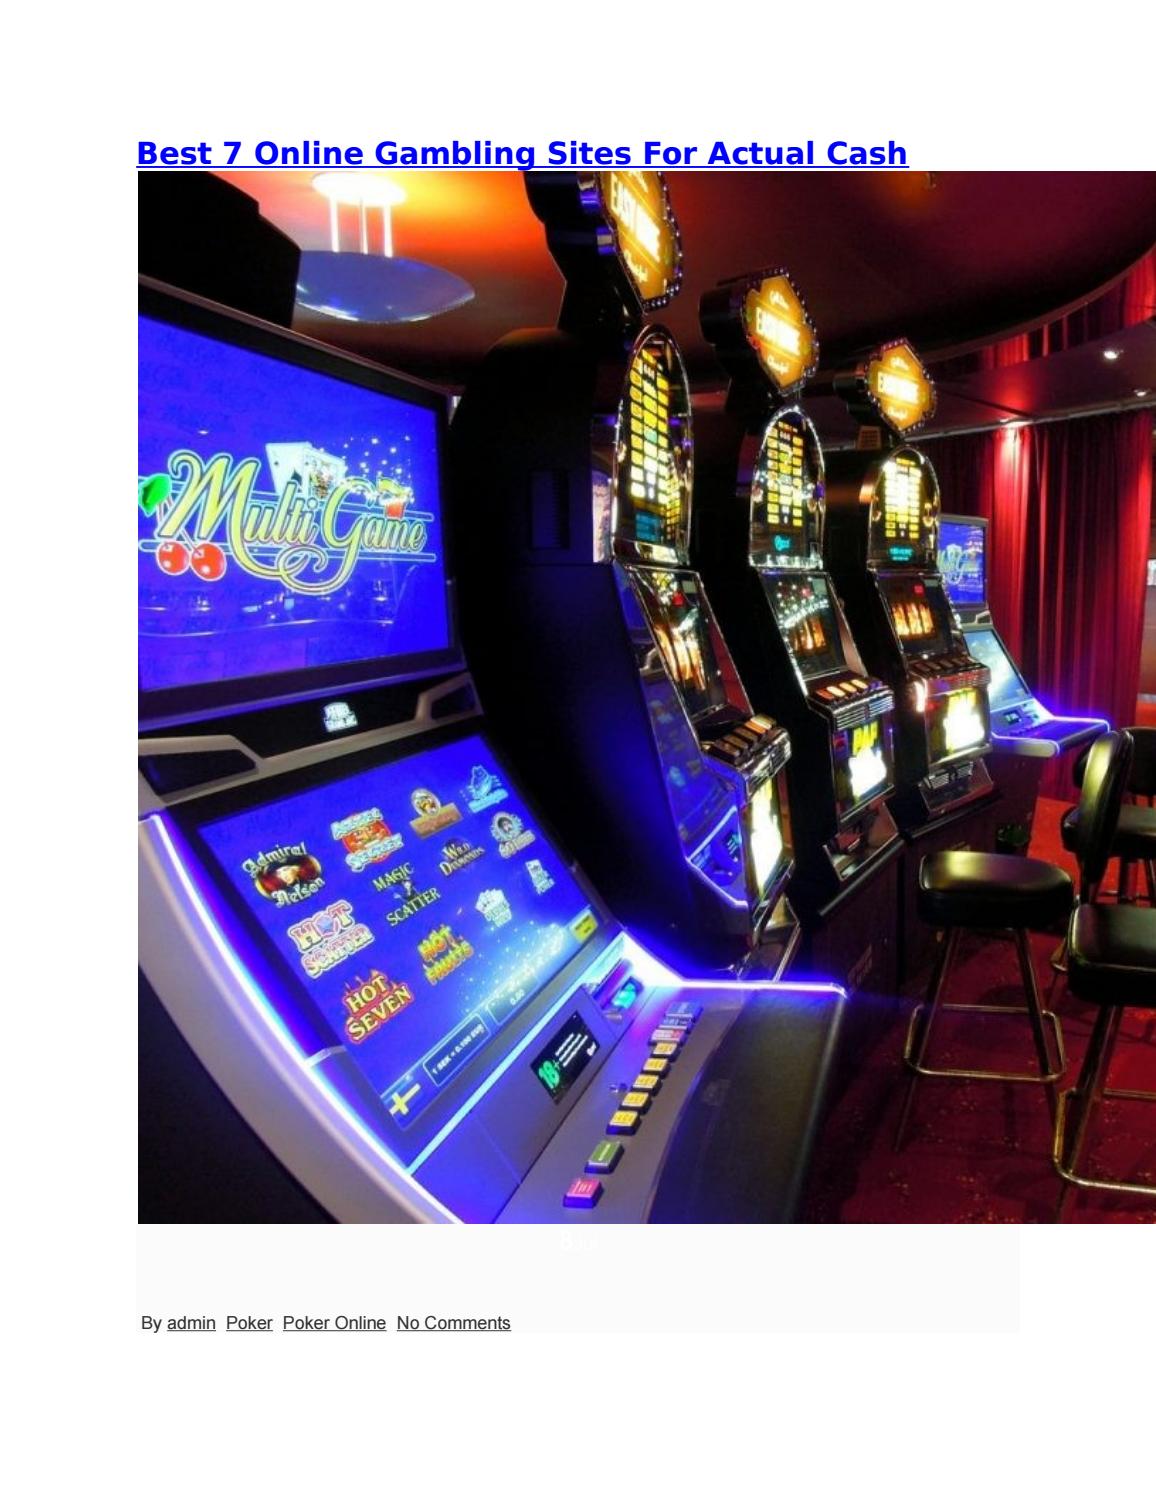 SEK valuta casino online 422296